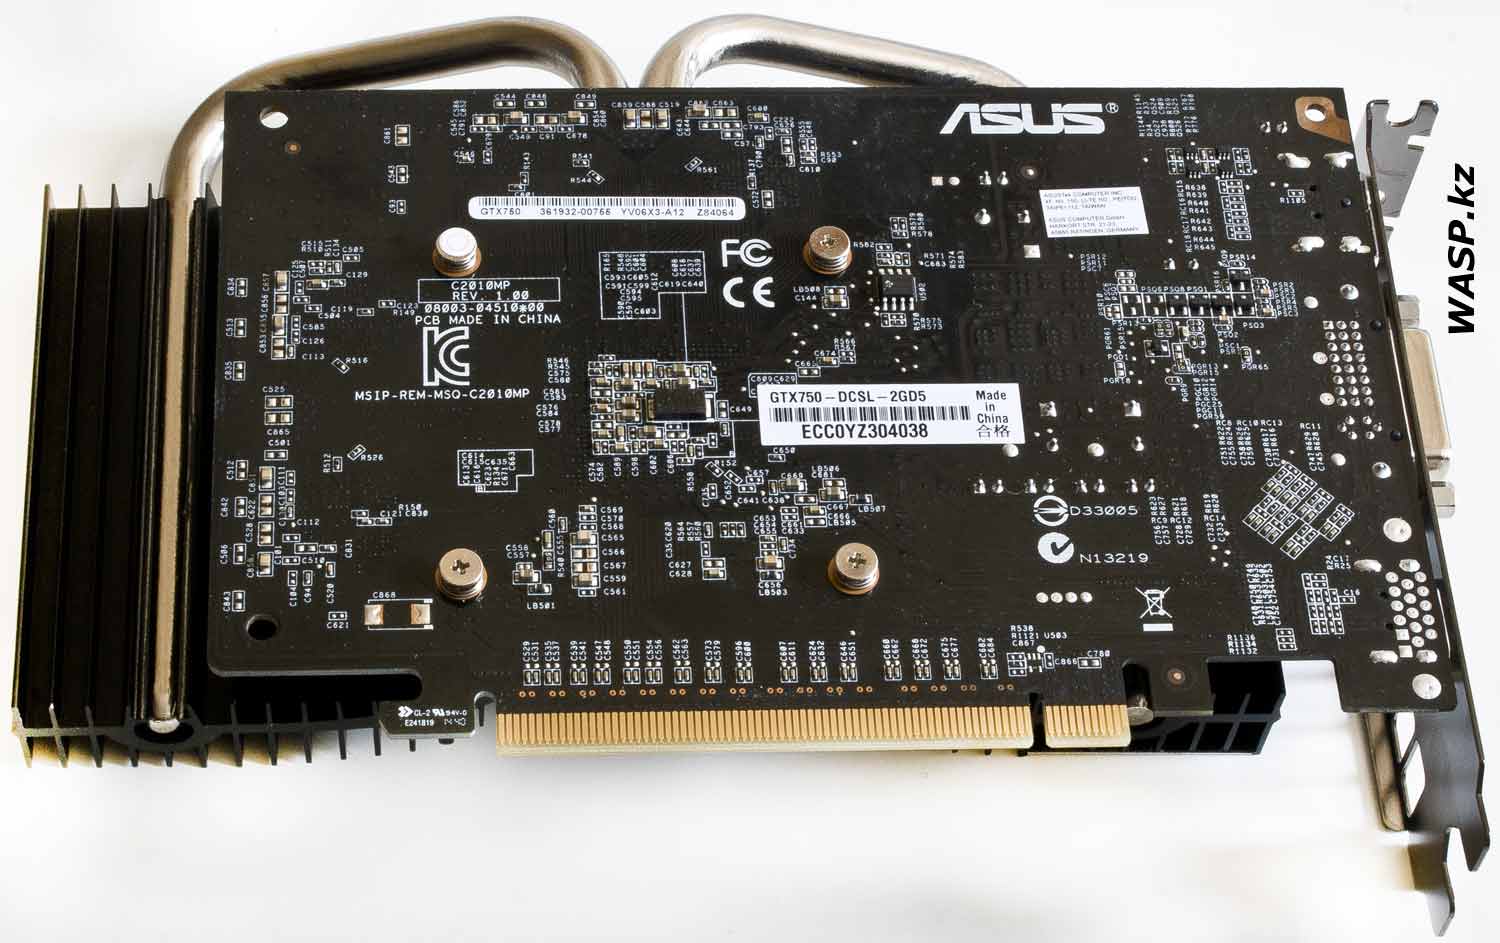 ASUS GTX750-DCSL-2GD5 обратная сторона видеокарты